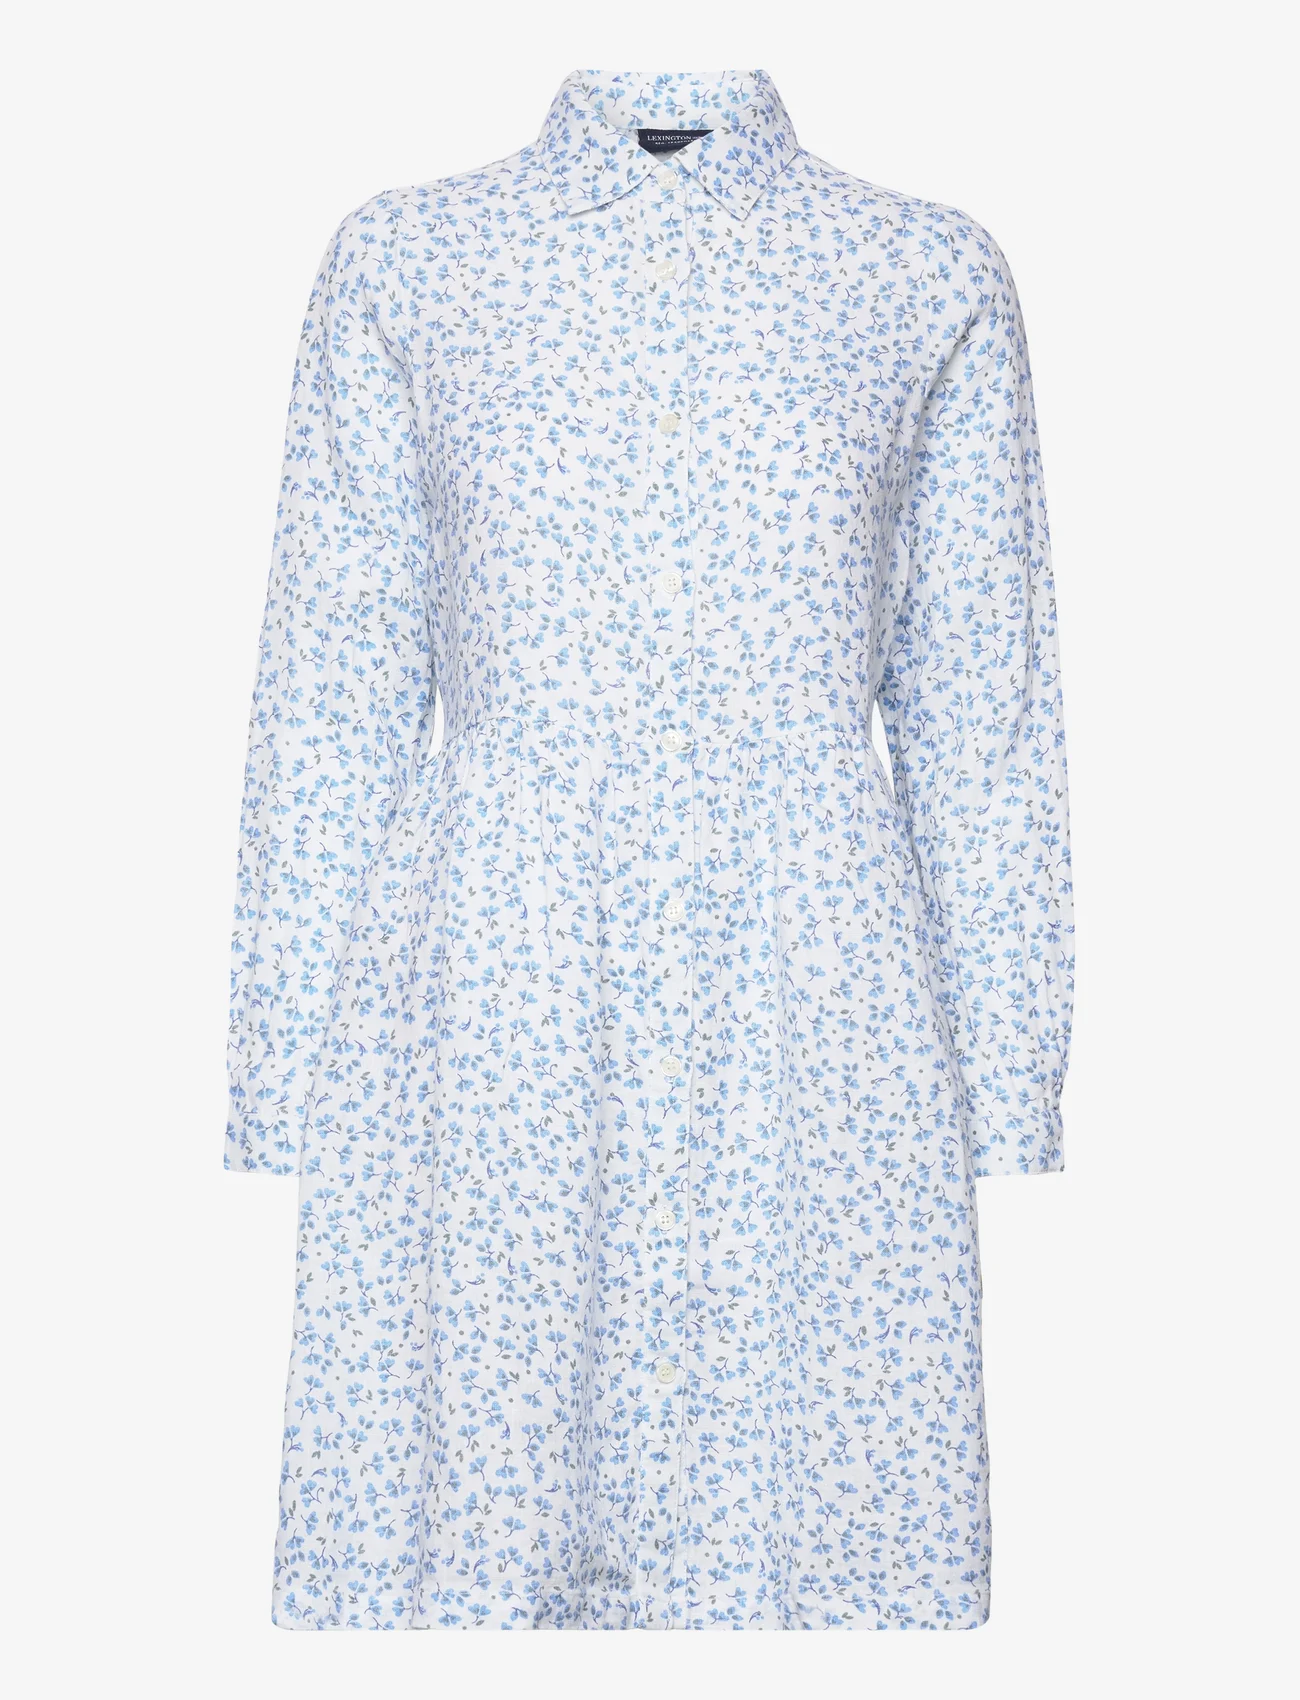 Lexington Clothing - Andrea Linen Dress - zomerjurken - blue flower print - 0